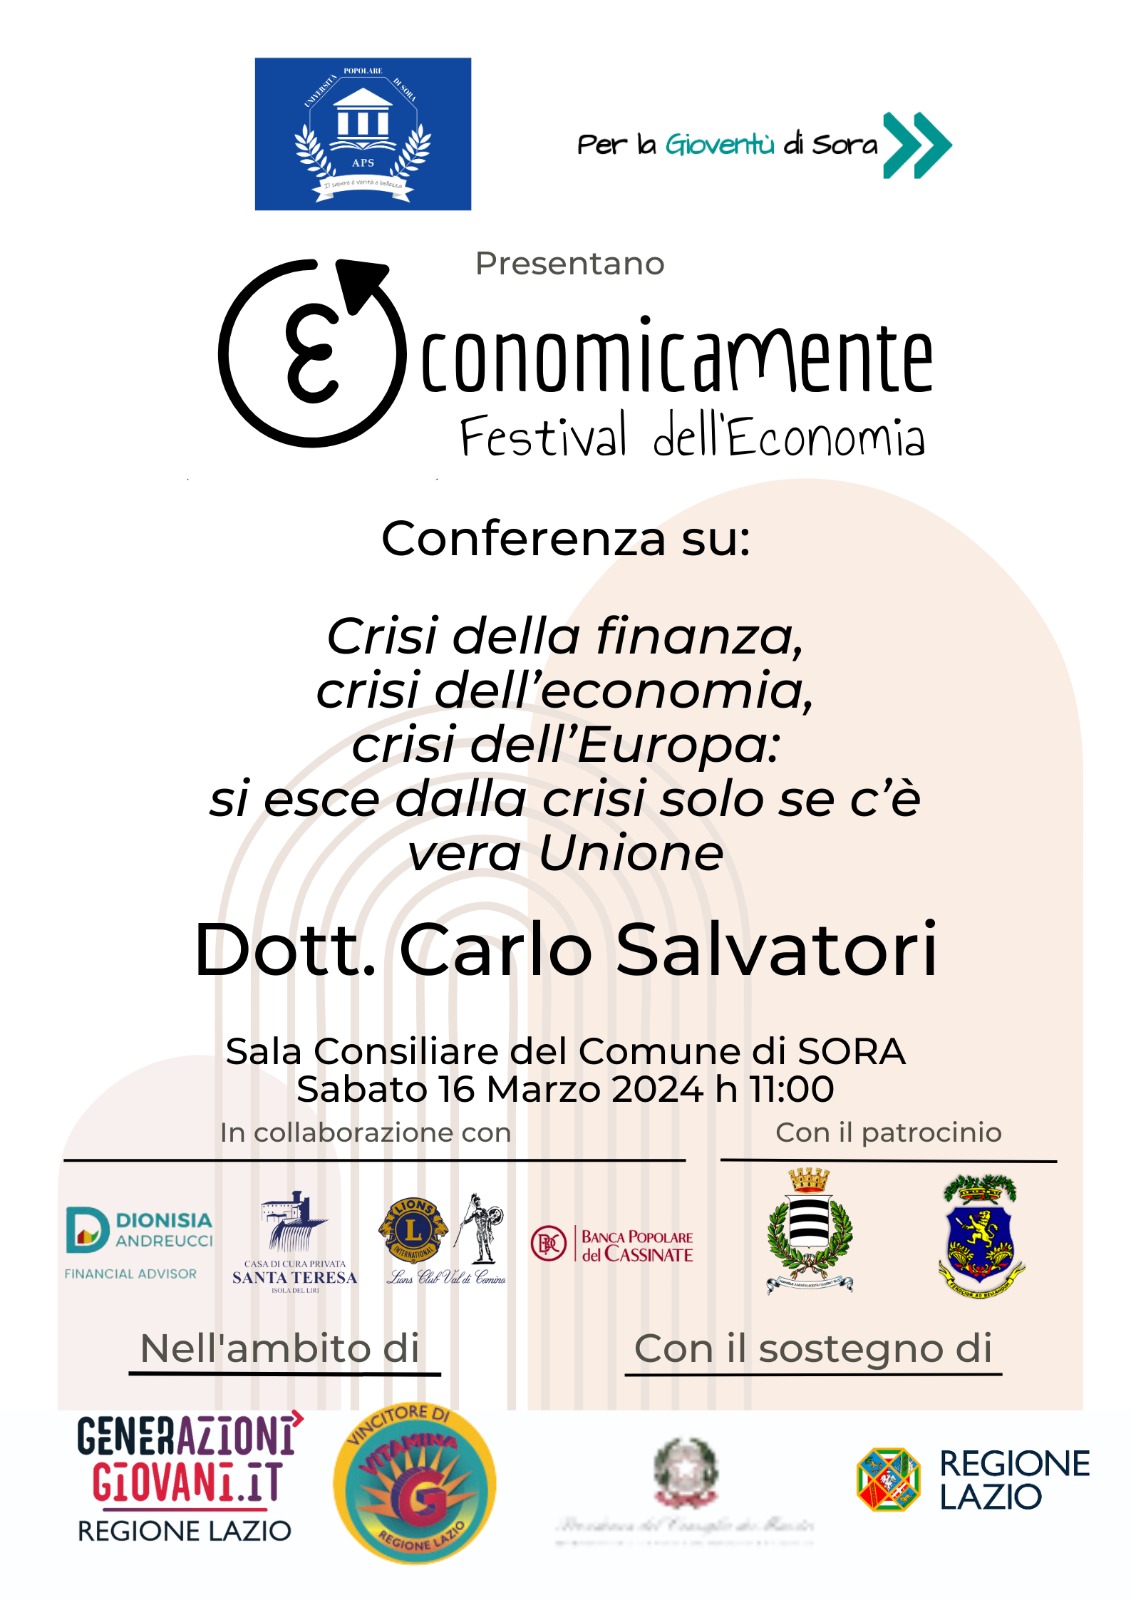 Crisi della finanza, crisi dell’economia, crisi dell’Europa: si esce dalla crisi solo c’è vera Unione – Dott. Carlo Salvatori